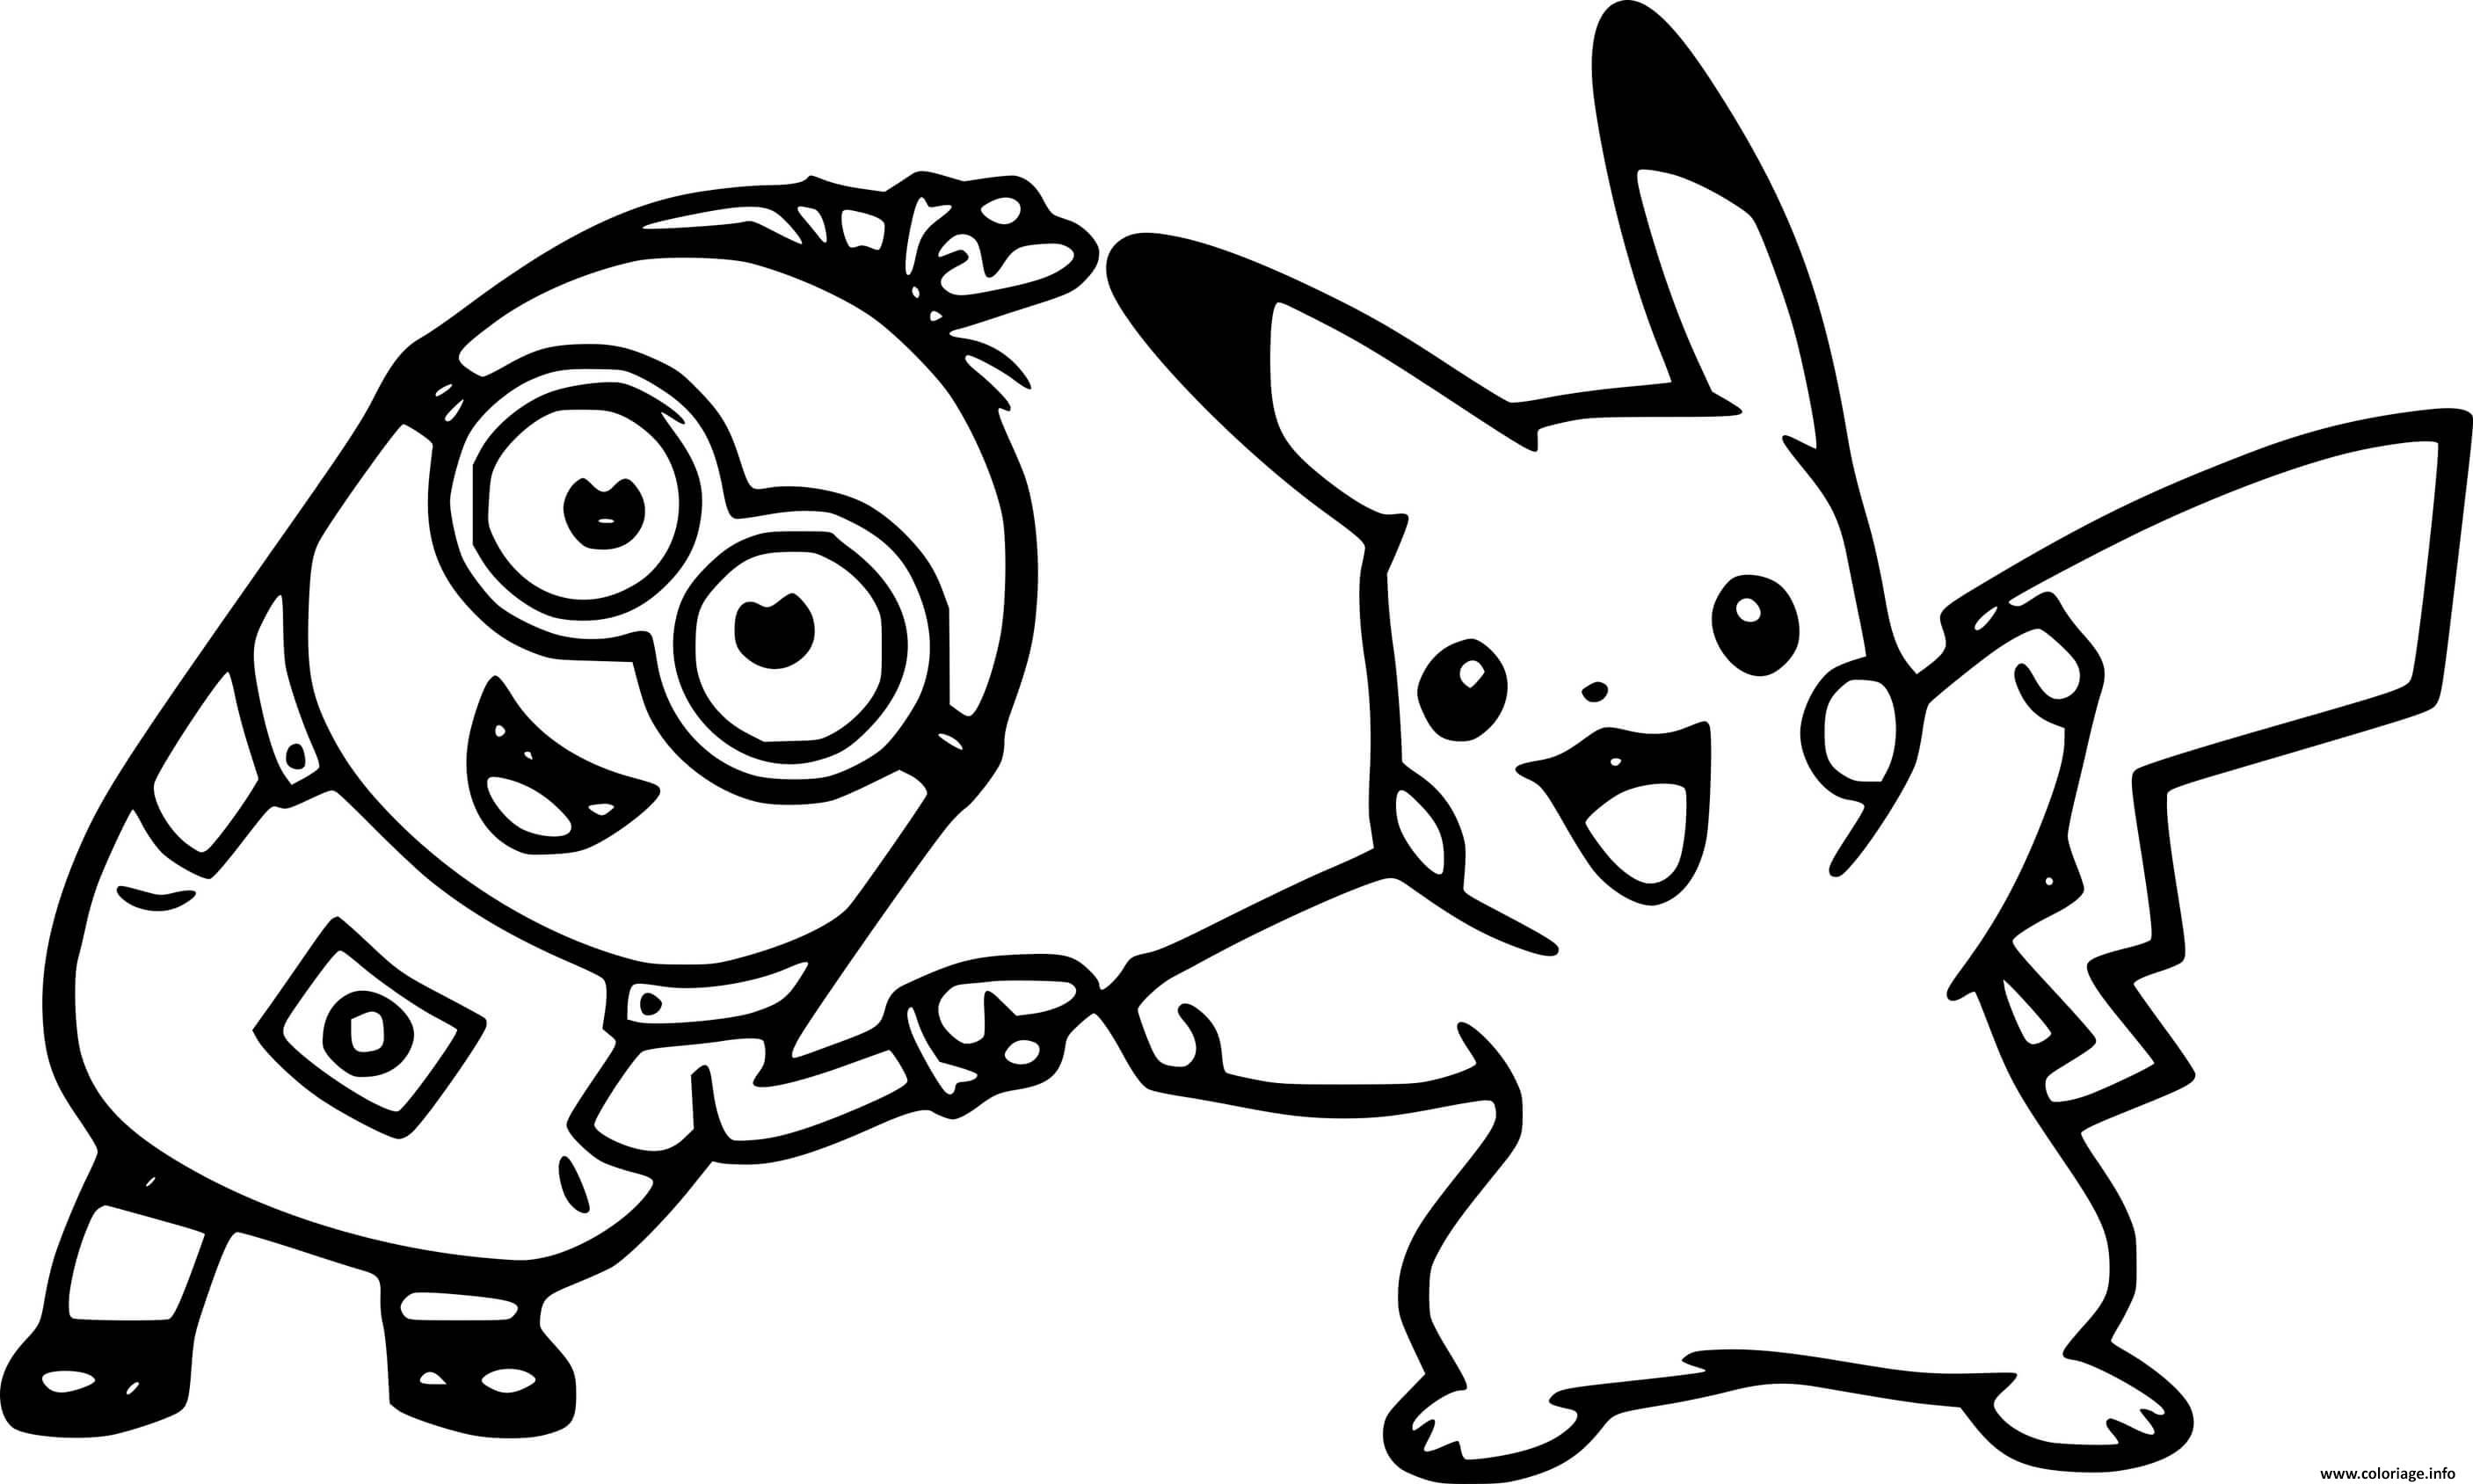 Dessin Minion and Pikachu Coloriage Gratuit à Imprimer